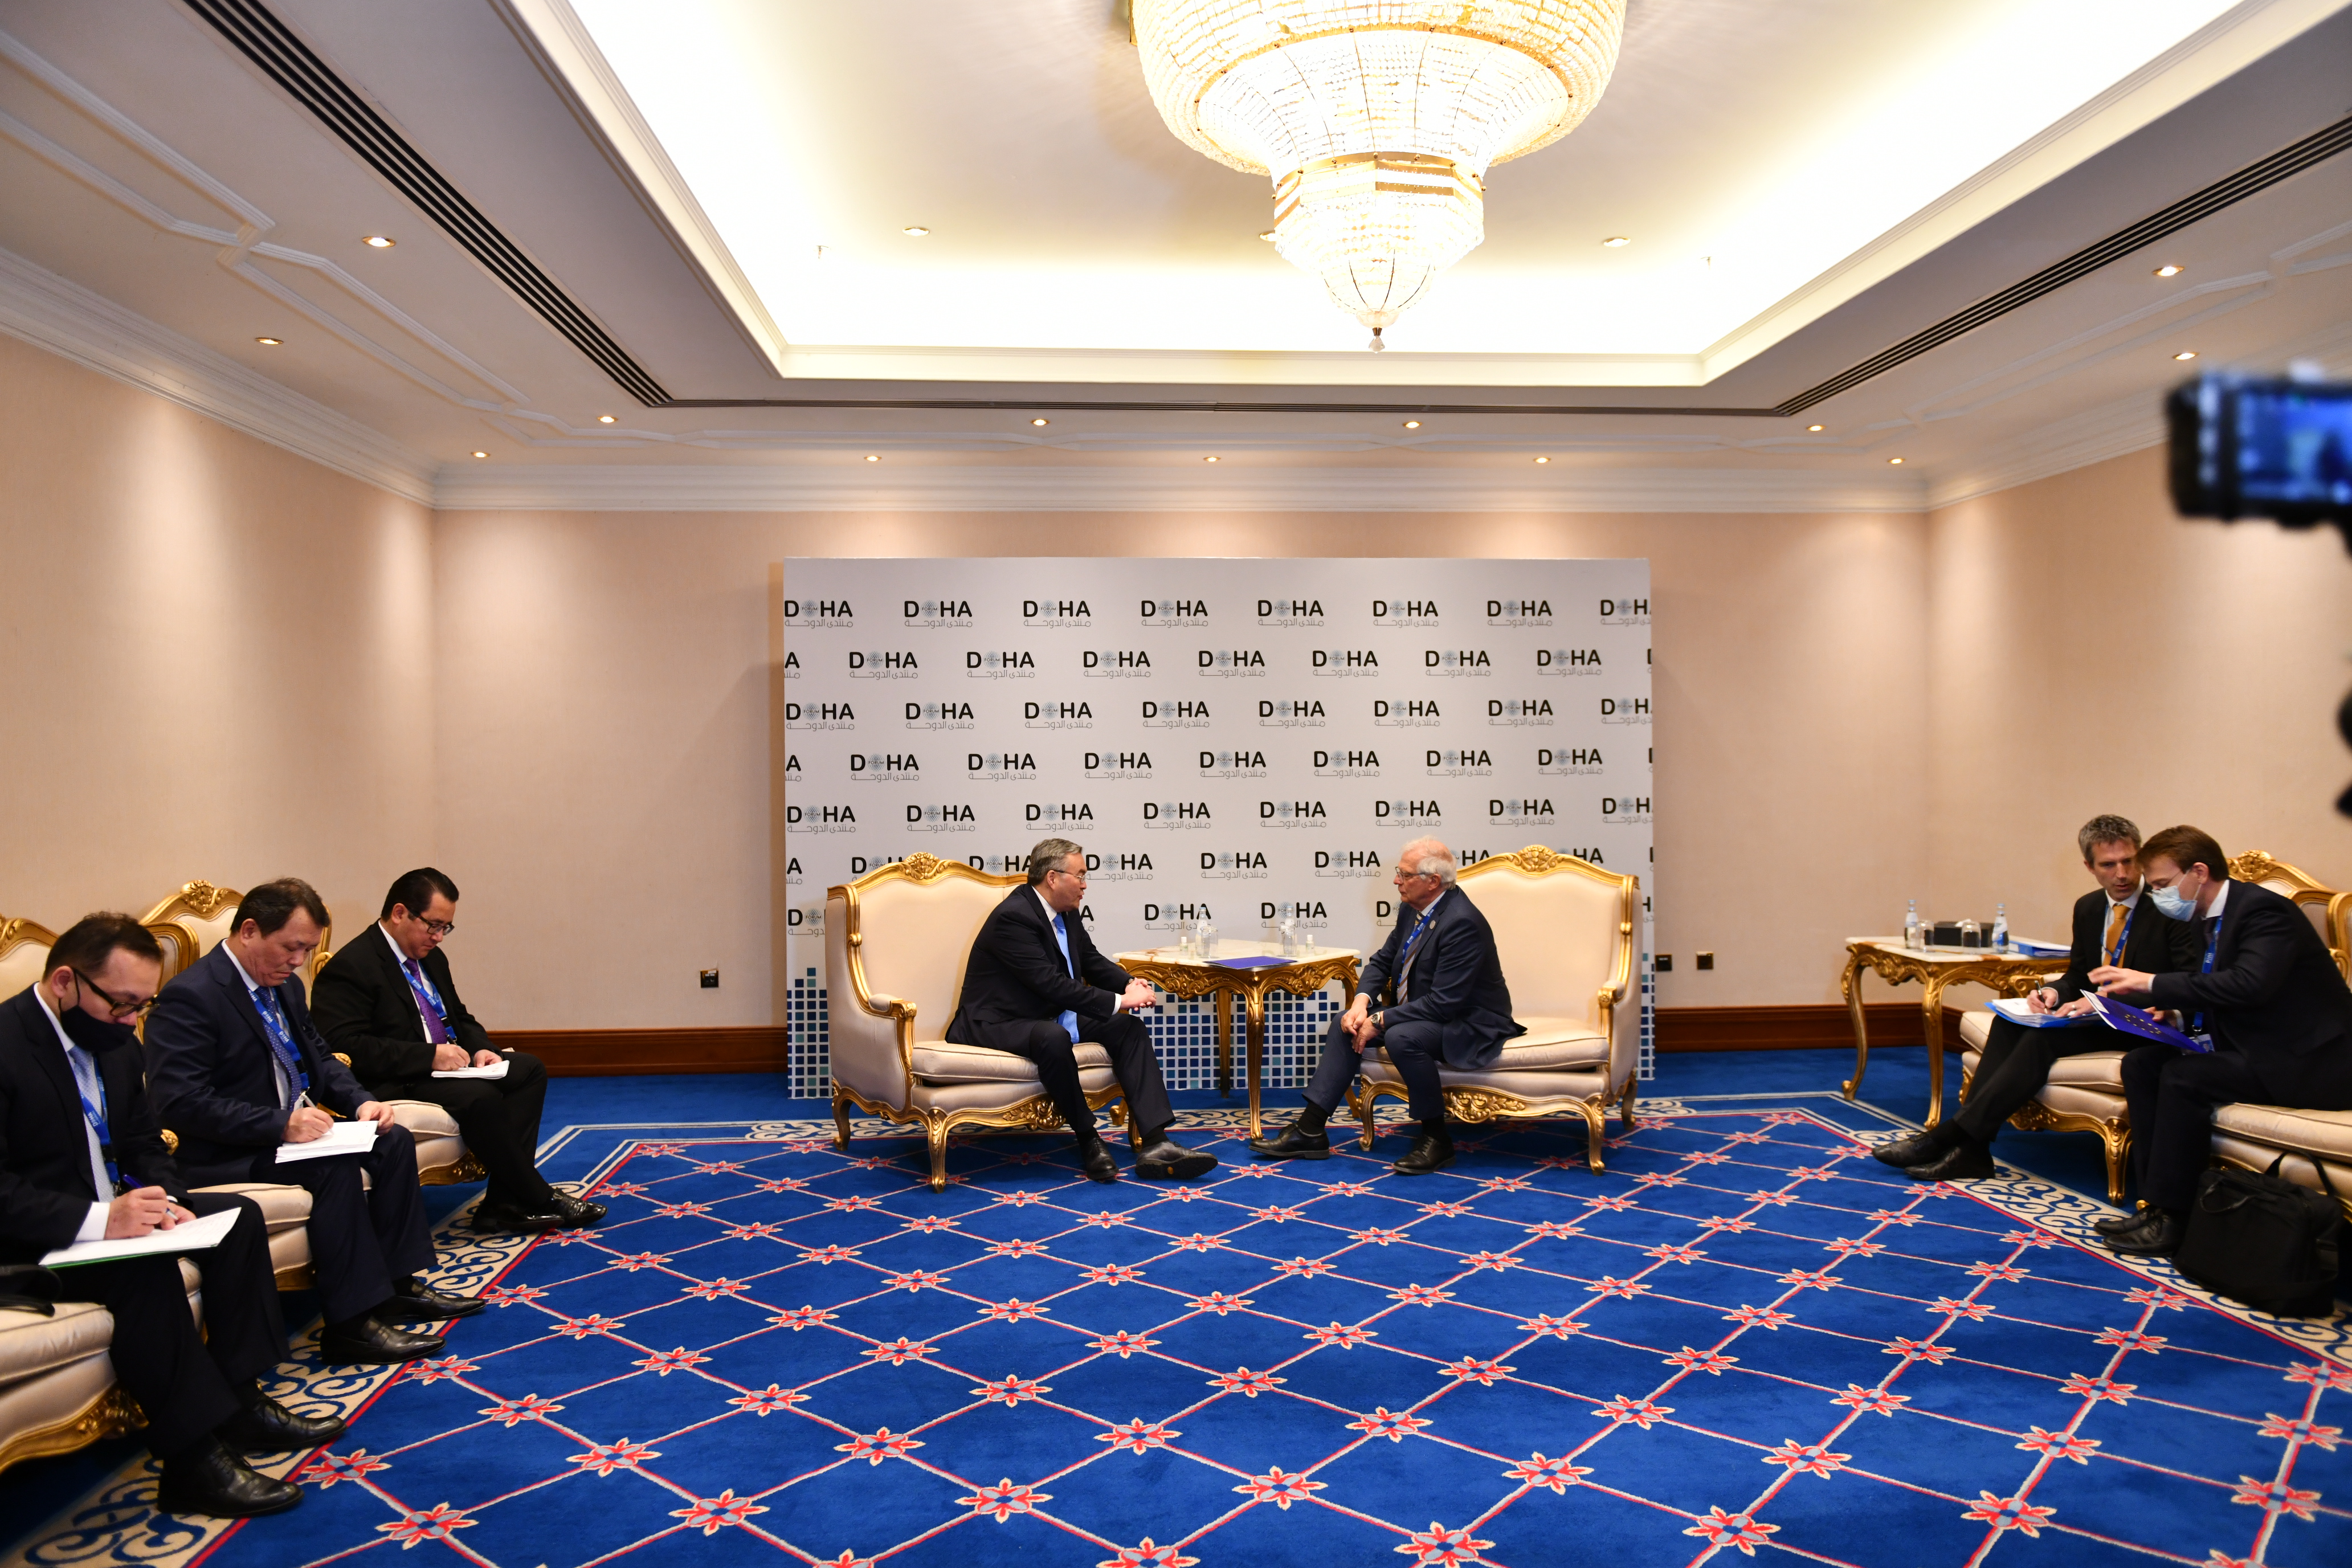 Перспективы укрепления политического и экономического сотрудничества обсуждены с Верховным представителем ЕС